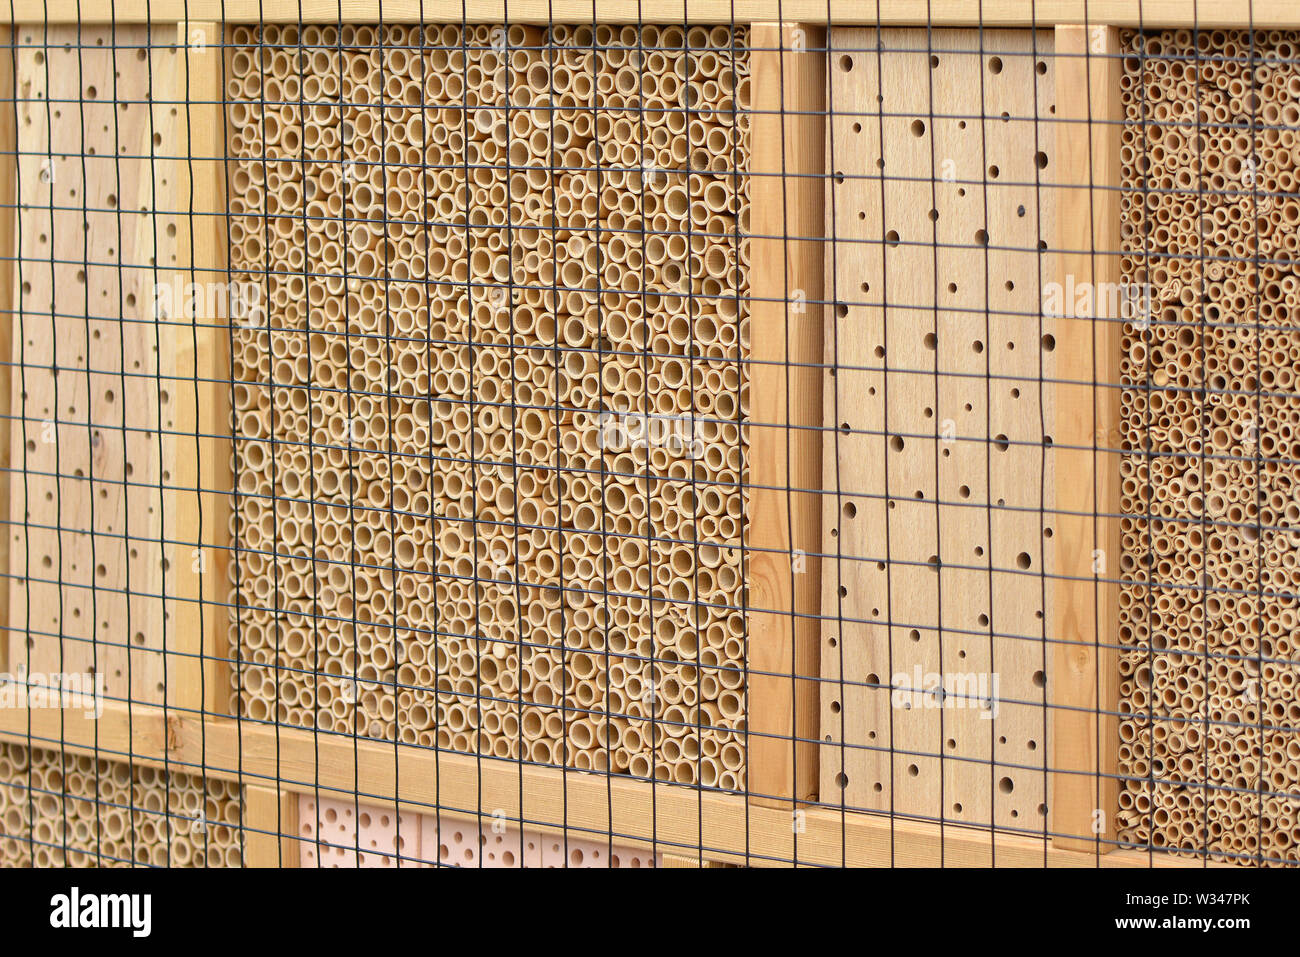 Gros plan d'une maison d'insectes en bois de la structure de l'hôtel créé pour fournir un abri pour les insectes comme les abeilles pour empêcher l'extinction Banque D'Images